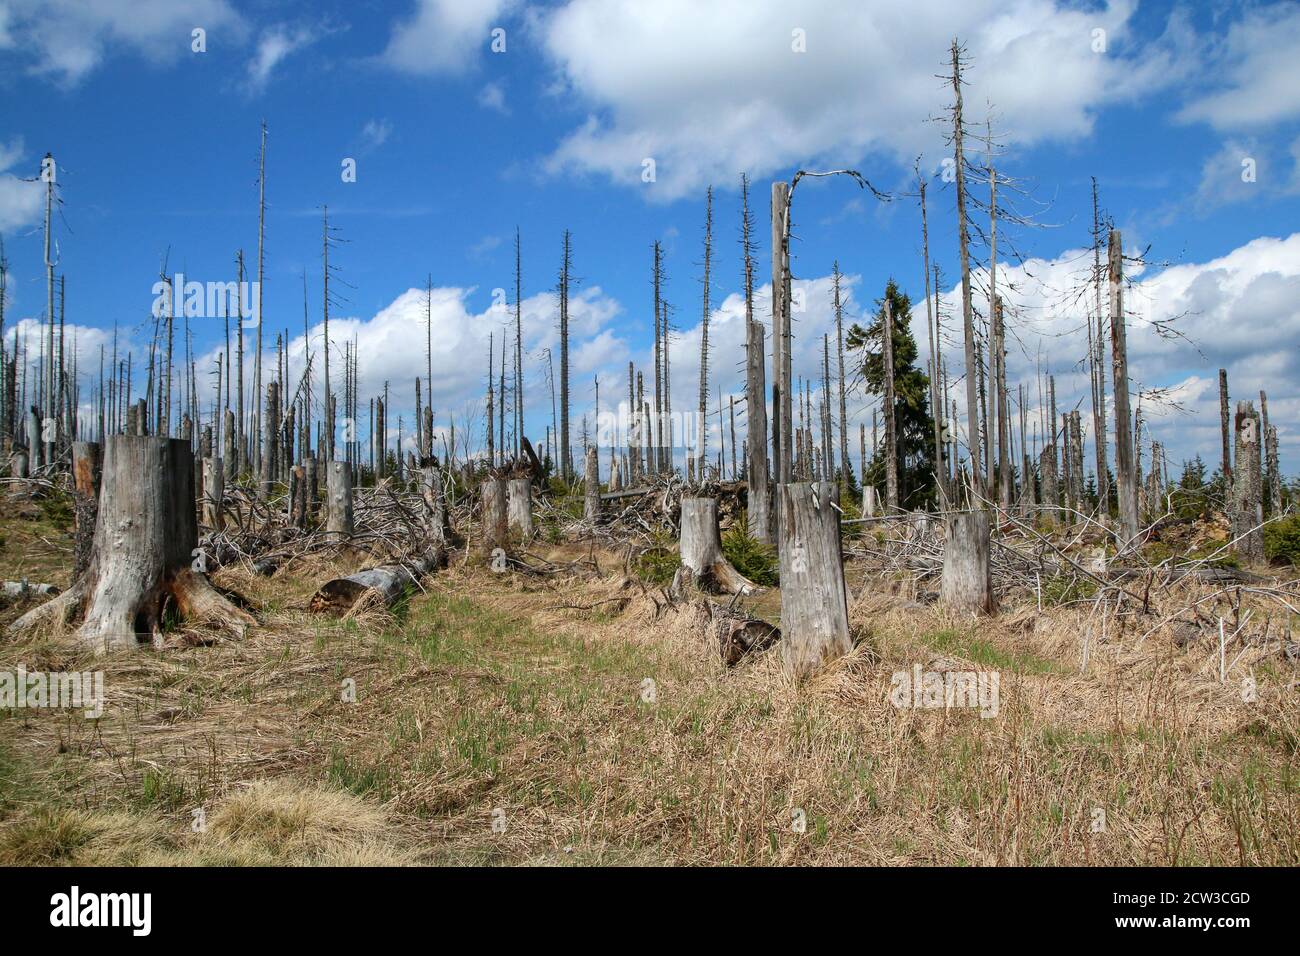 La foresta danneggiata dall'uragano e lasciata rivitalizzare naturalmente senza intervento dell'uomo. Foto Stock